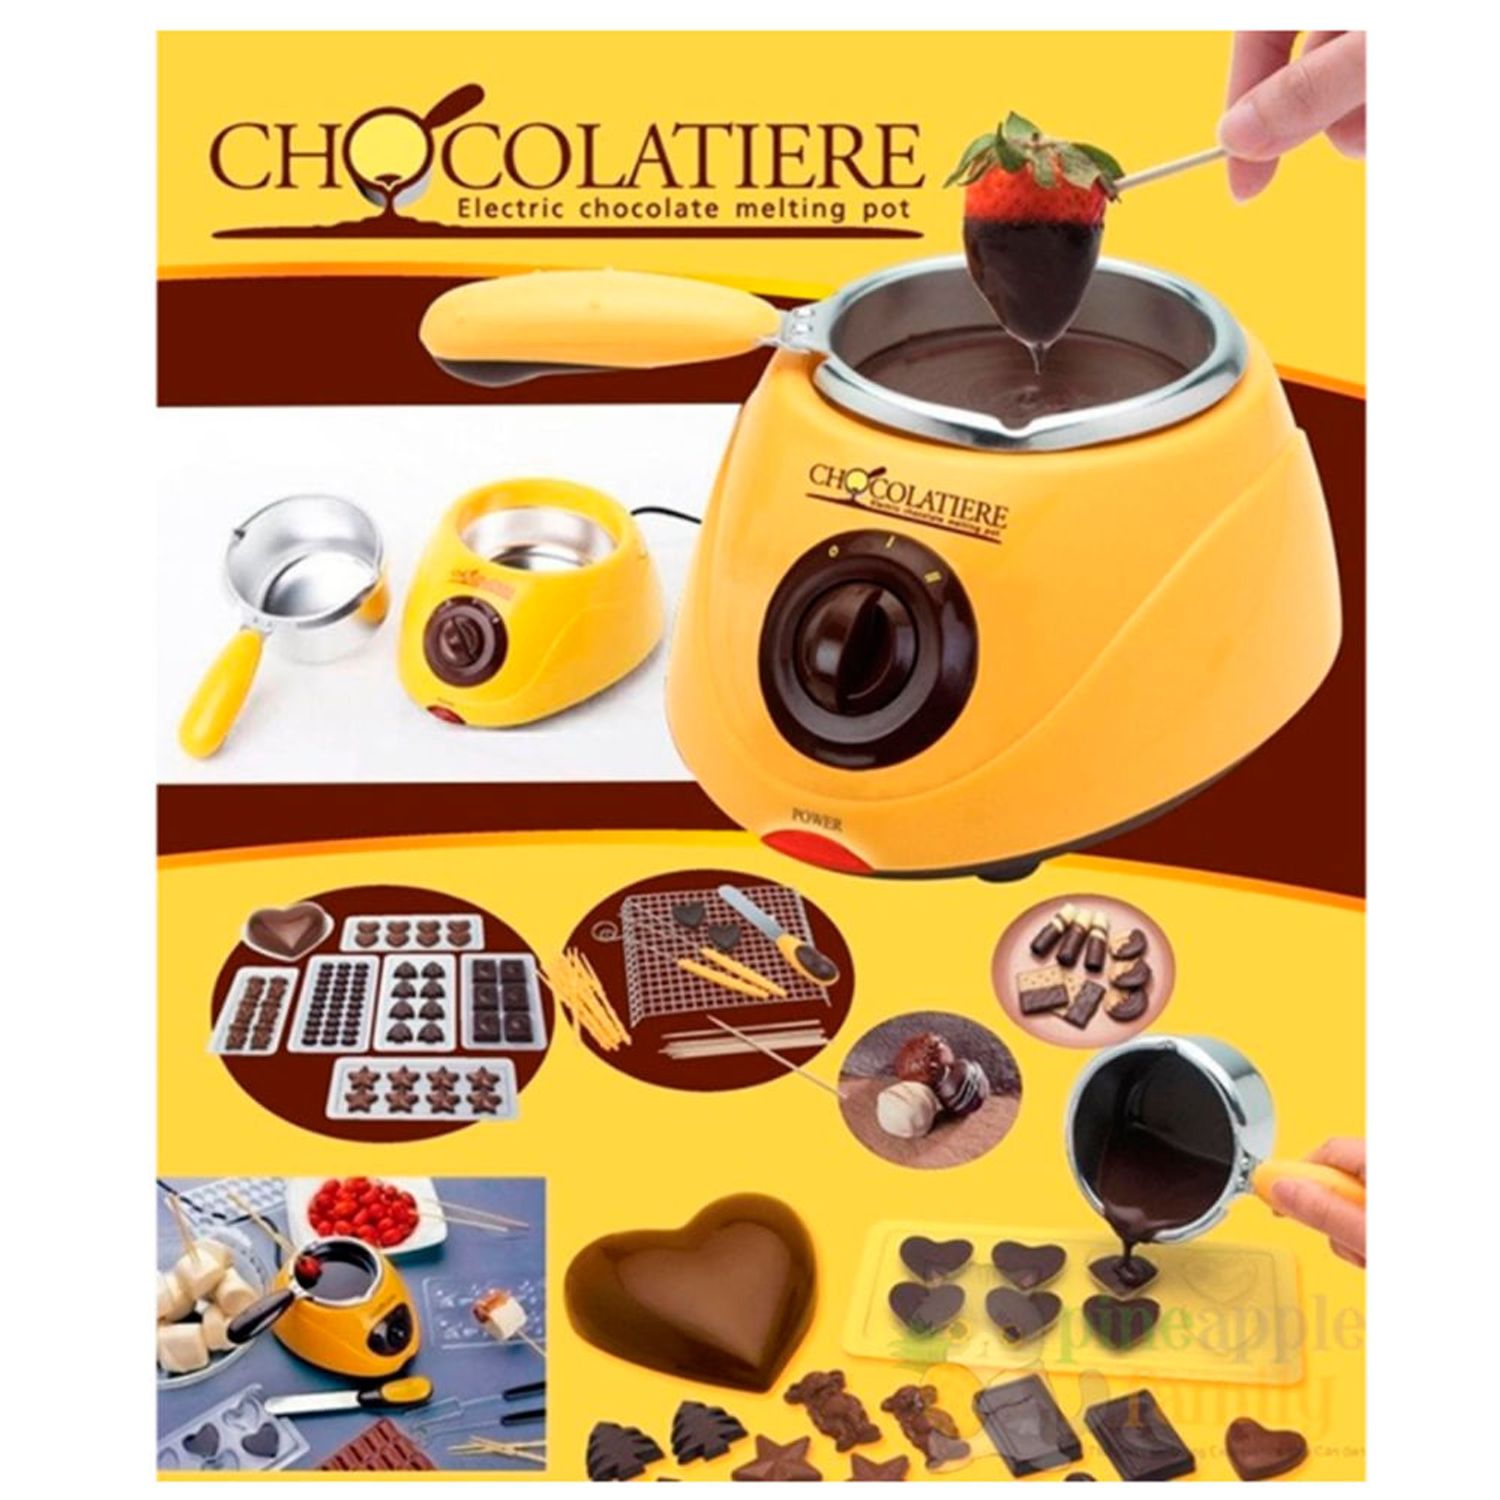 Chocolatera Electrica olla cocina c accesorios postre chocolate